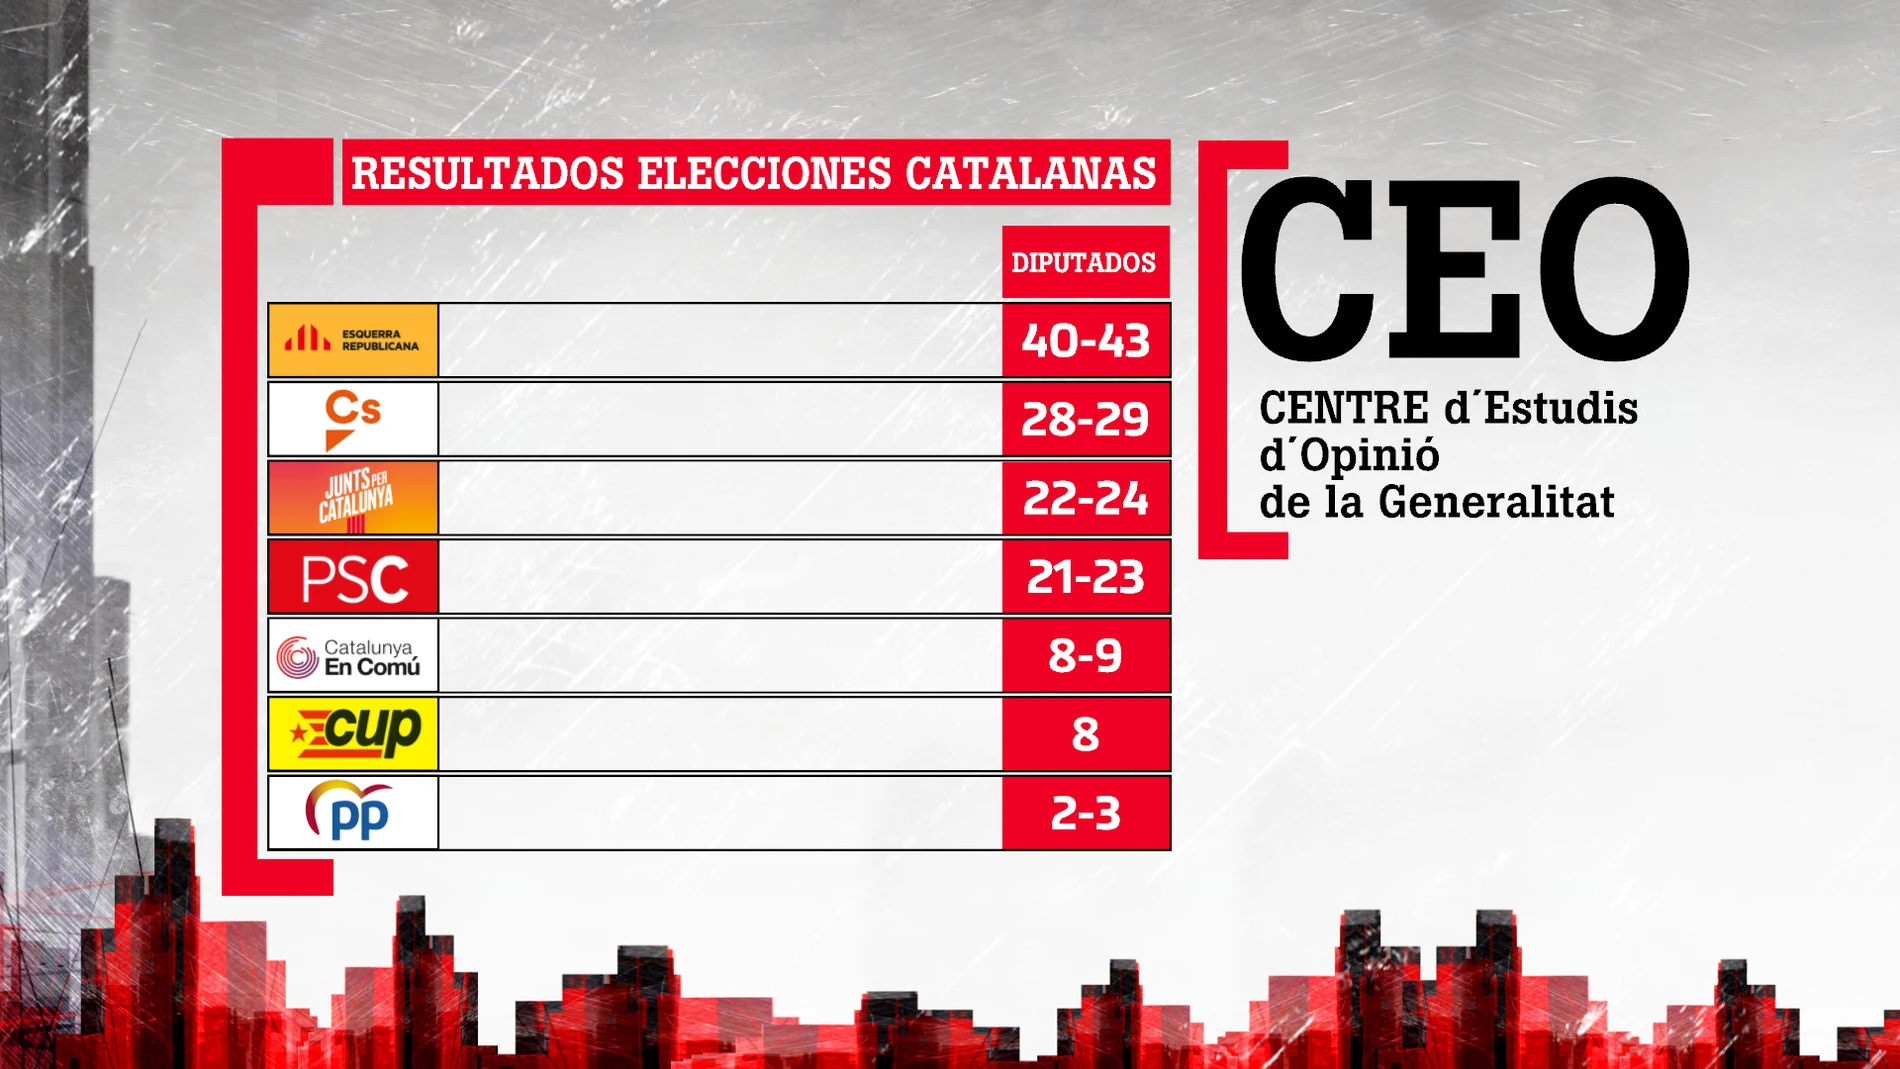 Barómetro del CEO catalán sobre las elecciones catalanas